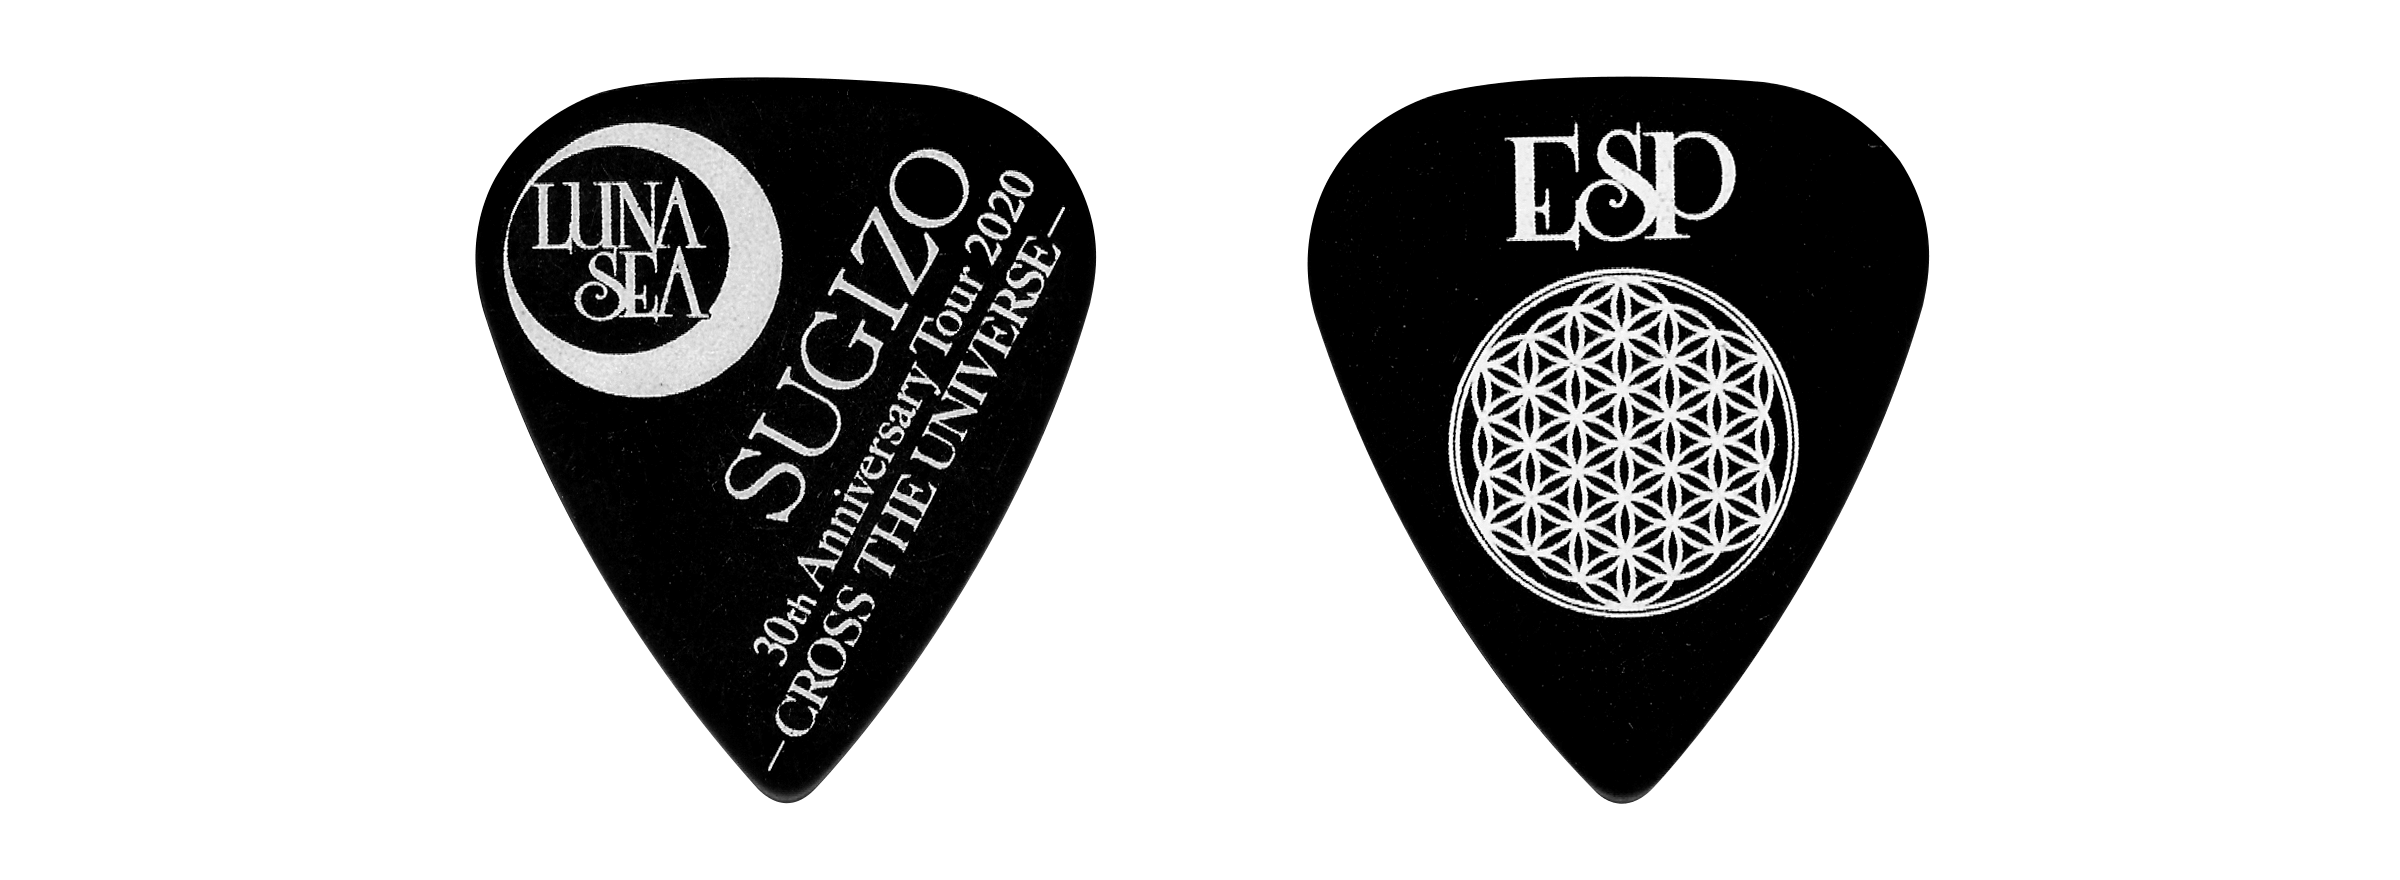 Luna Sea 30th Anniversary Tour Cross The Universe Sugizoピック 限定発売 Esp Guitars